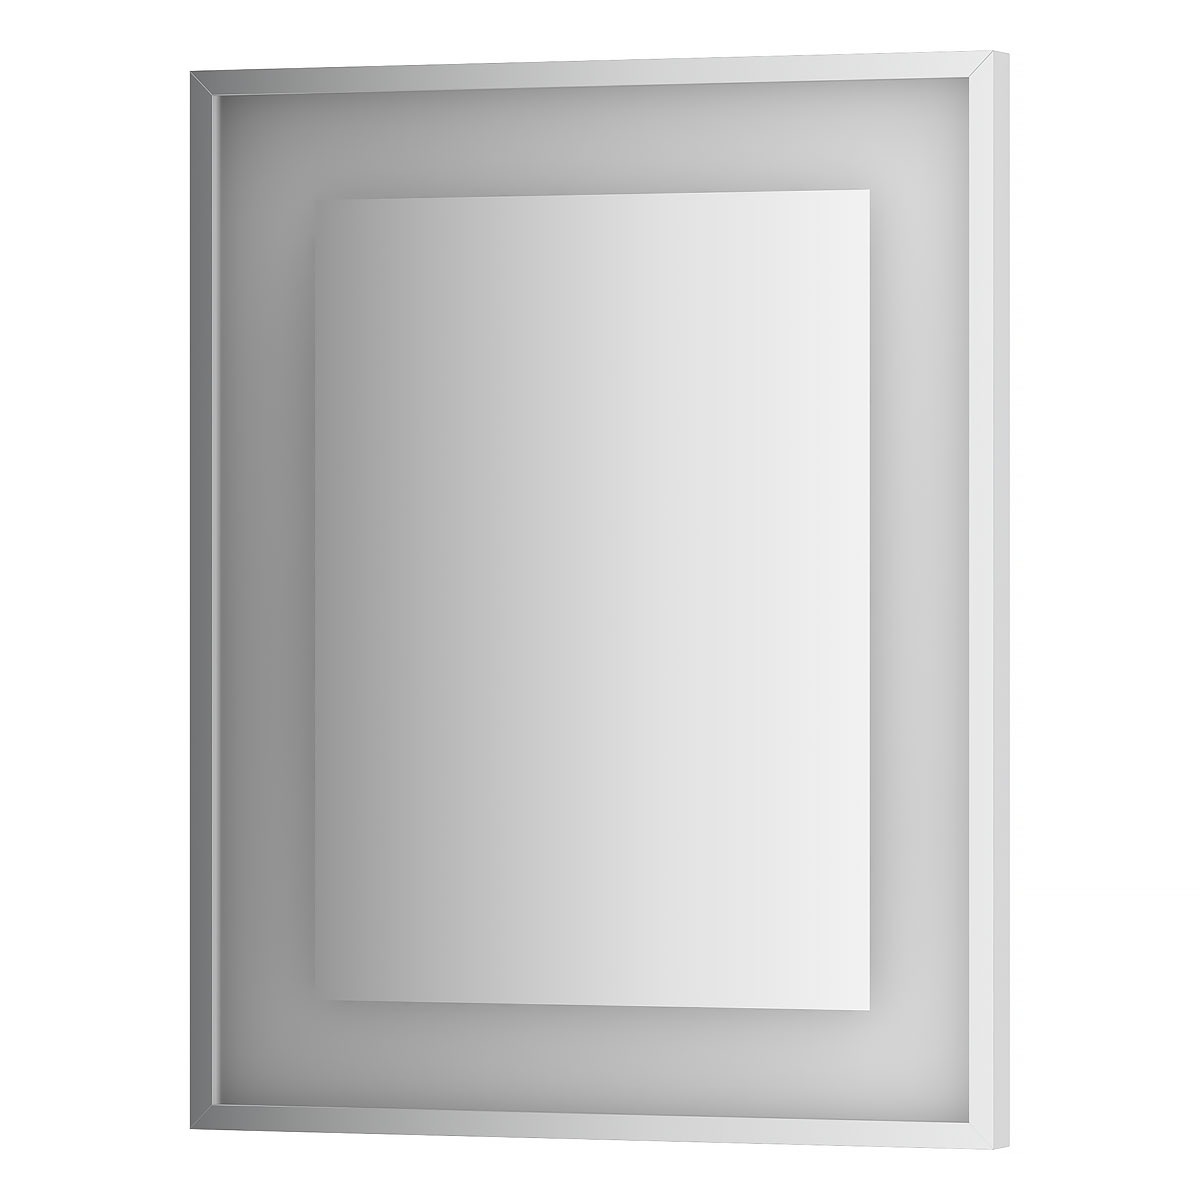 Зеркало Evoform в багетной раме со встроенным LED-светильником 18 W 60x75 см зеркало evoform со встроенным led светильником 4 w 60x75 см